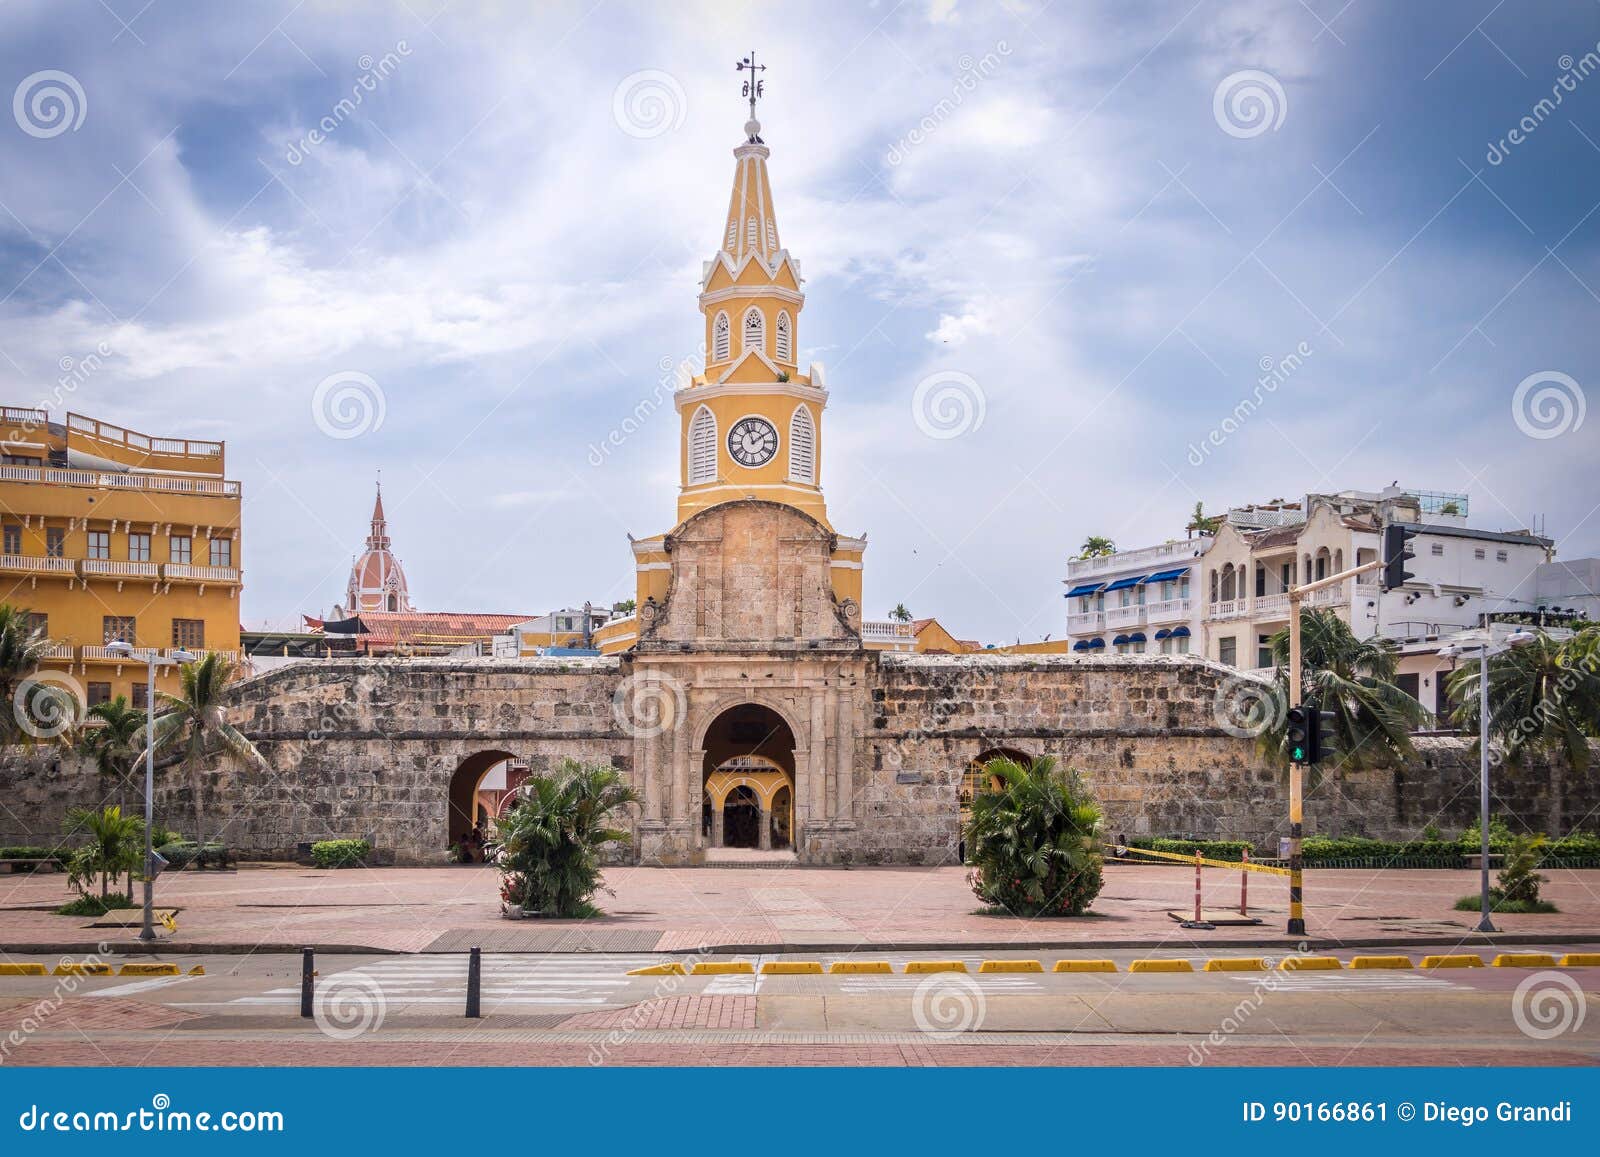 clock tower gate - cartagena de indias, colombia